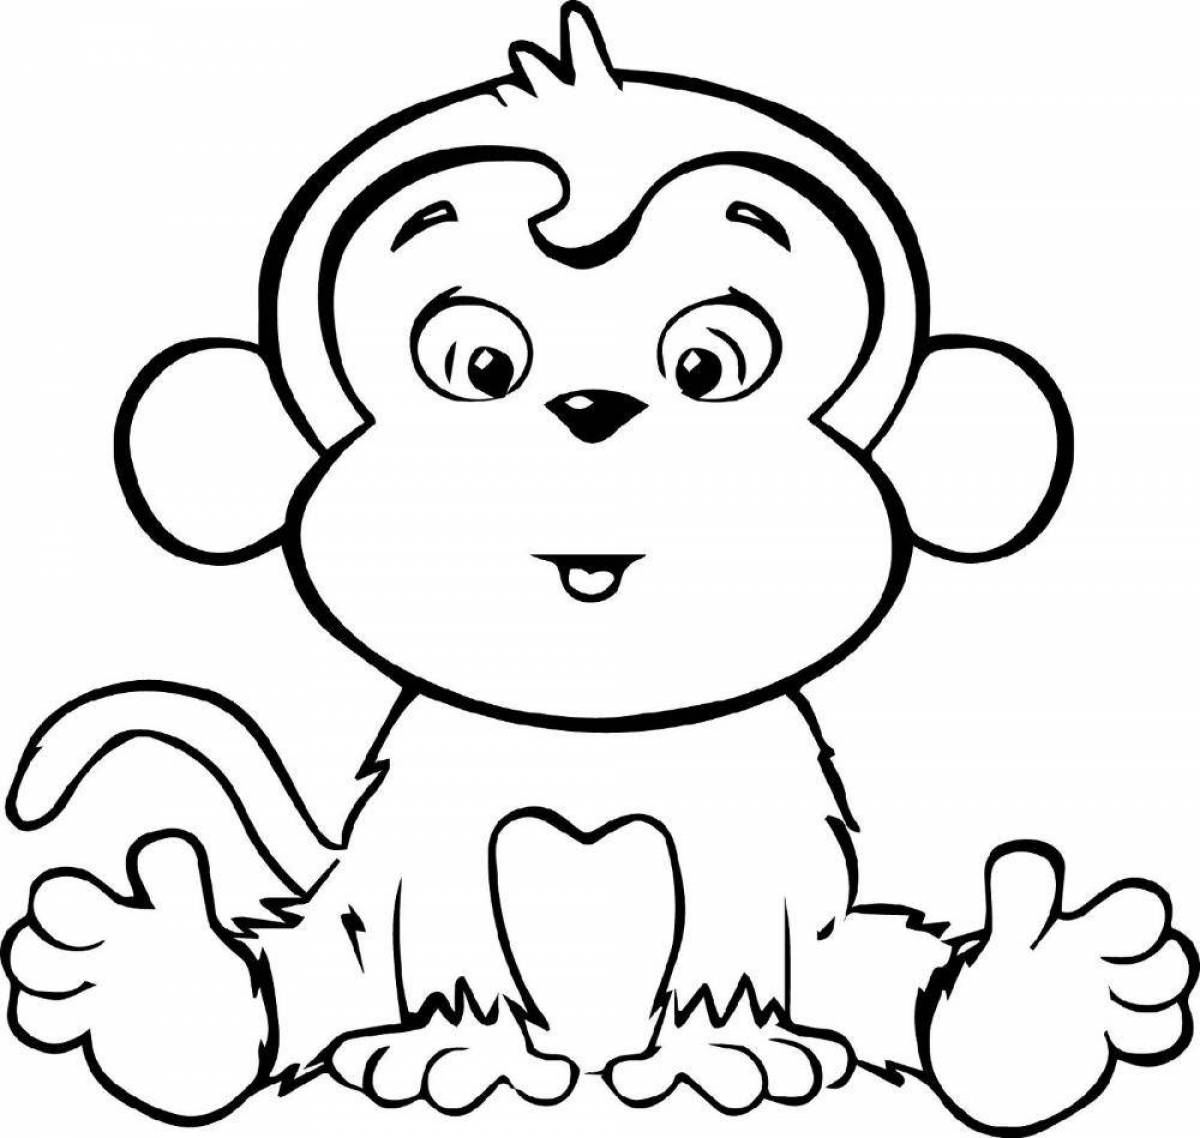 Яркая раскраска обезьянка для детей